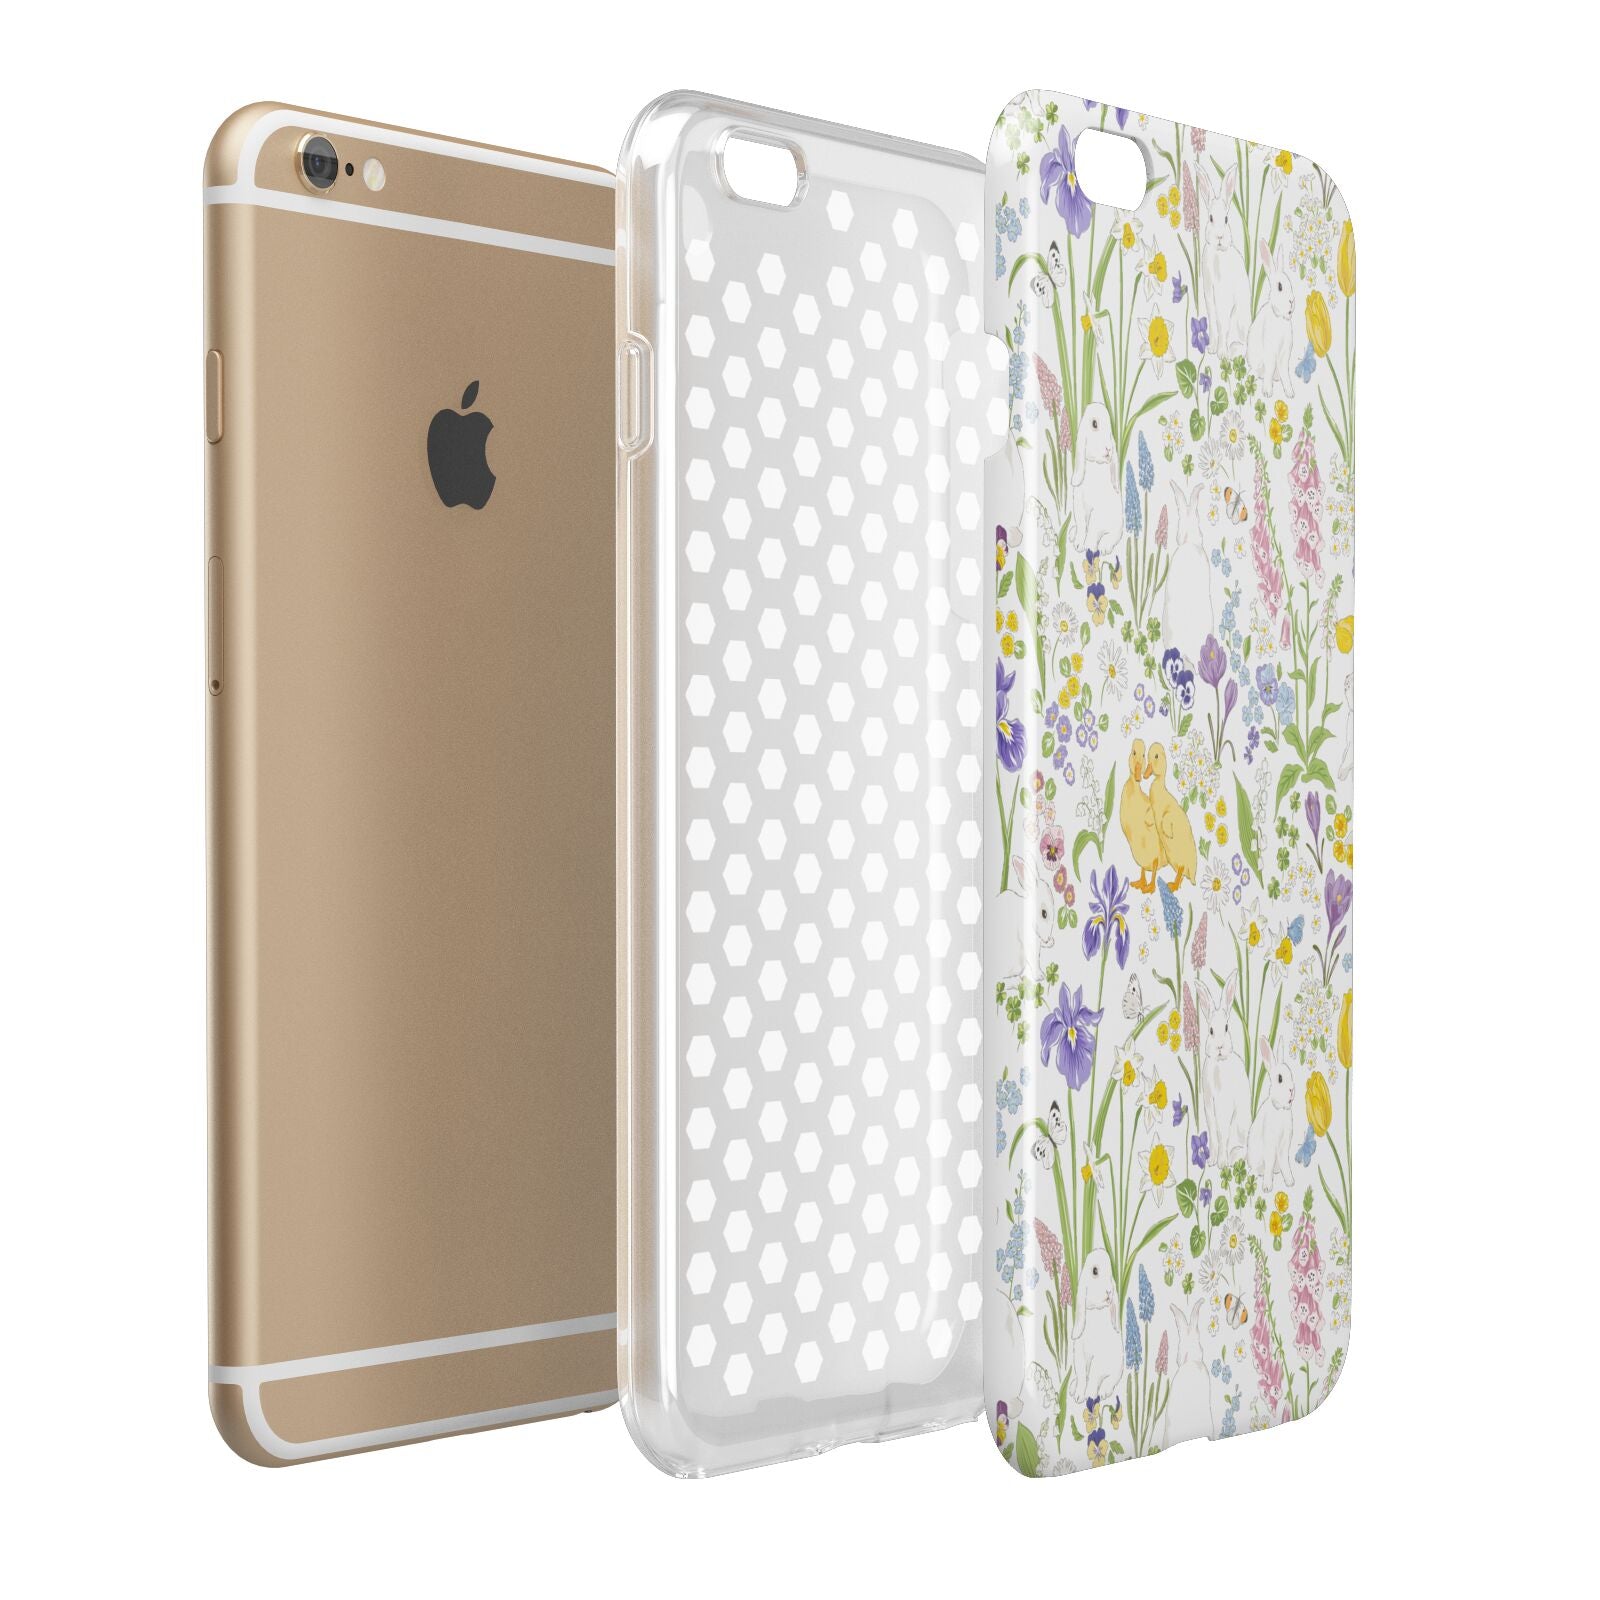 Easter Apple iPhone 6 Plus 3D Tough Case Expand Detail Image